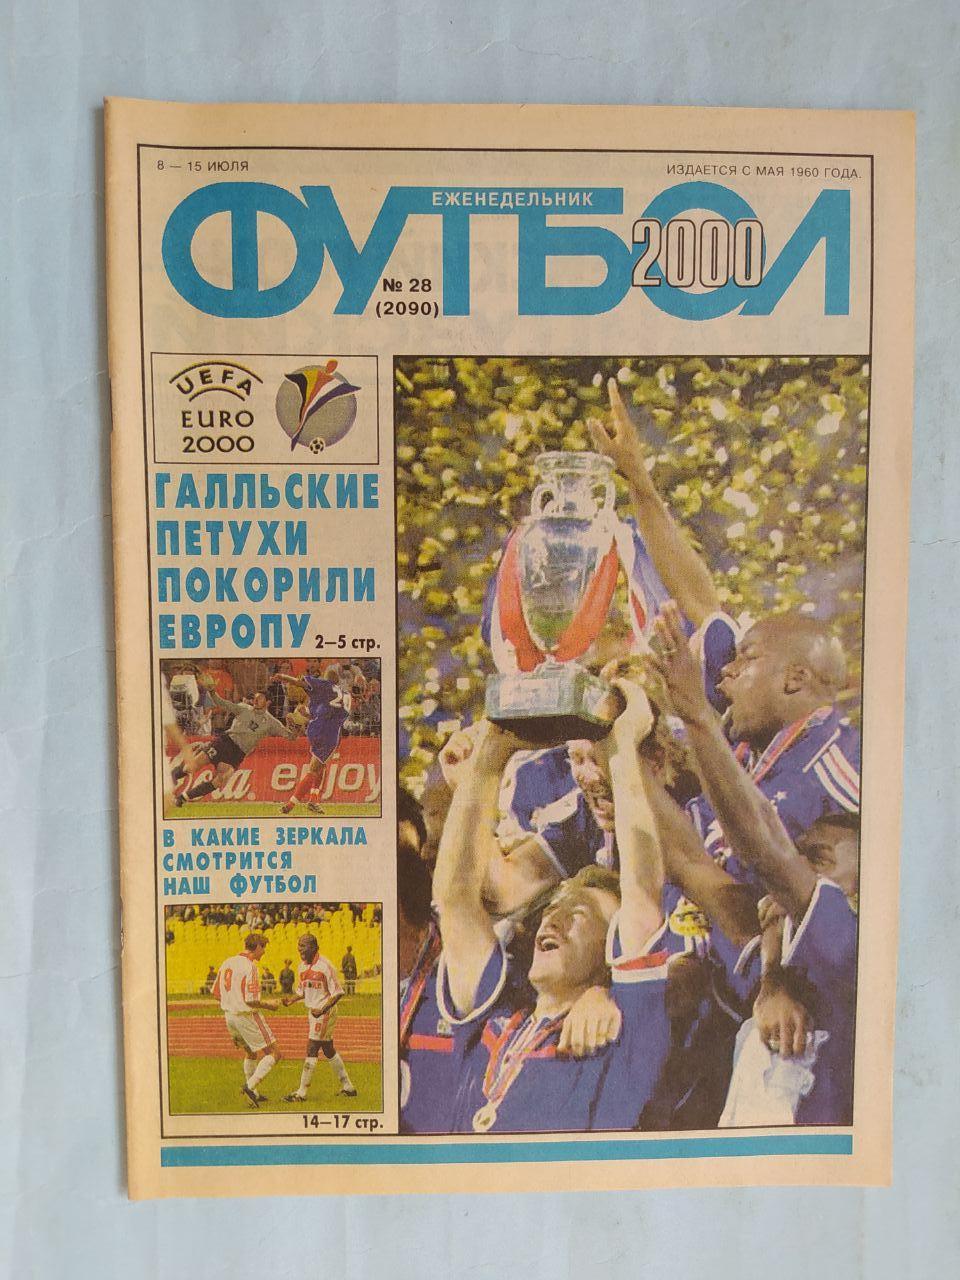 Еженедельник Футбол российское издание 2000 год № 28